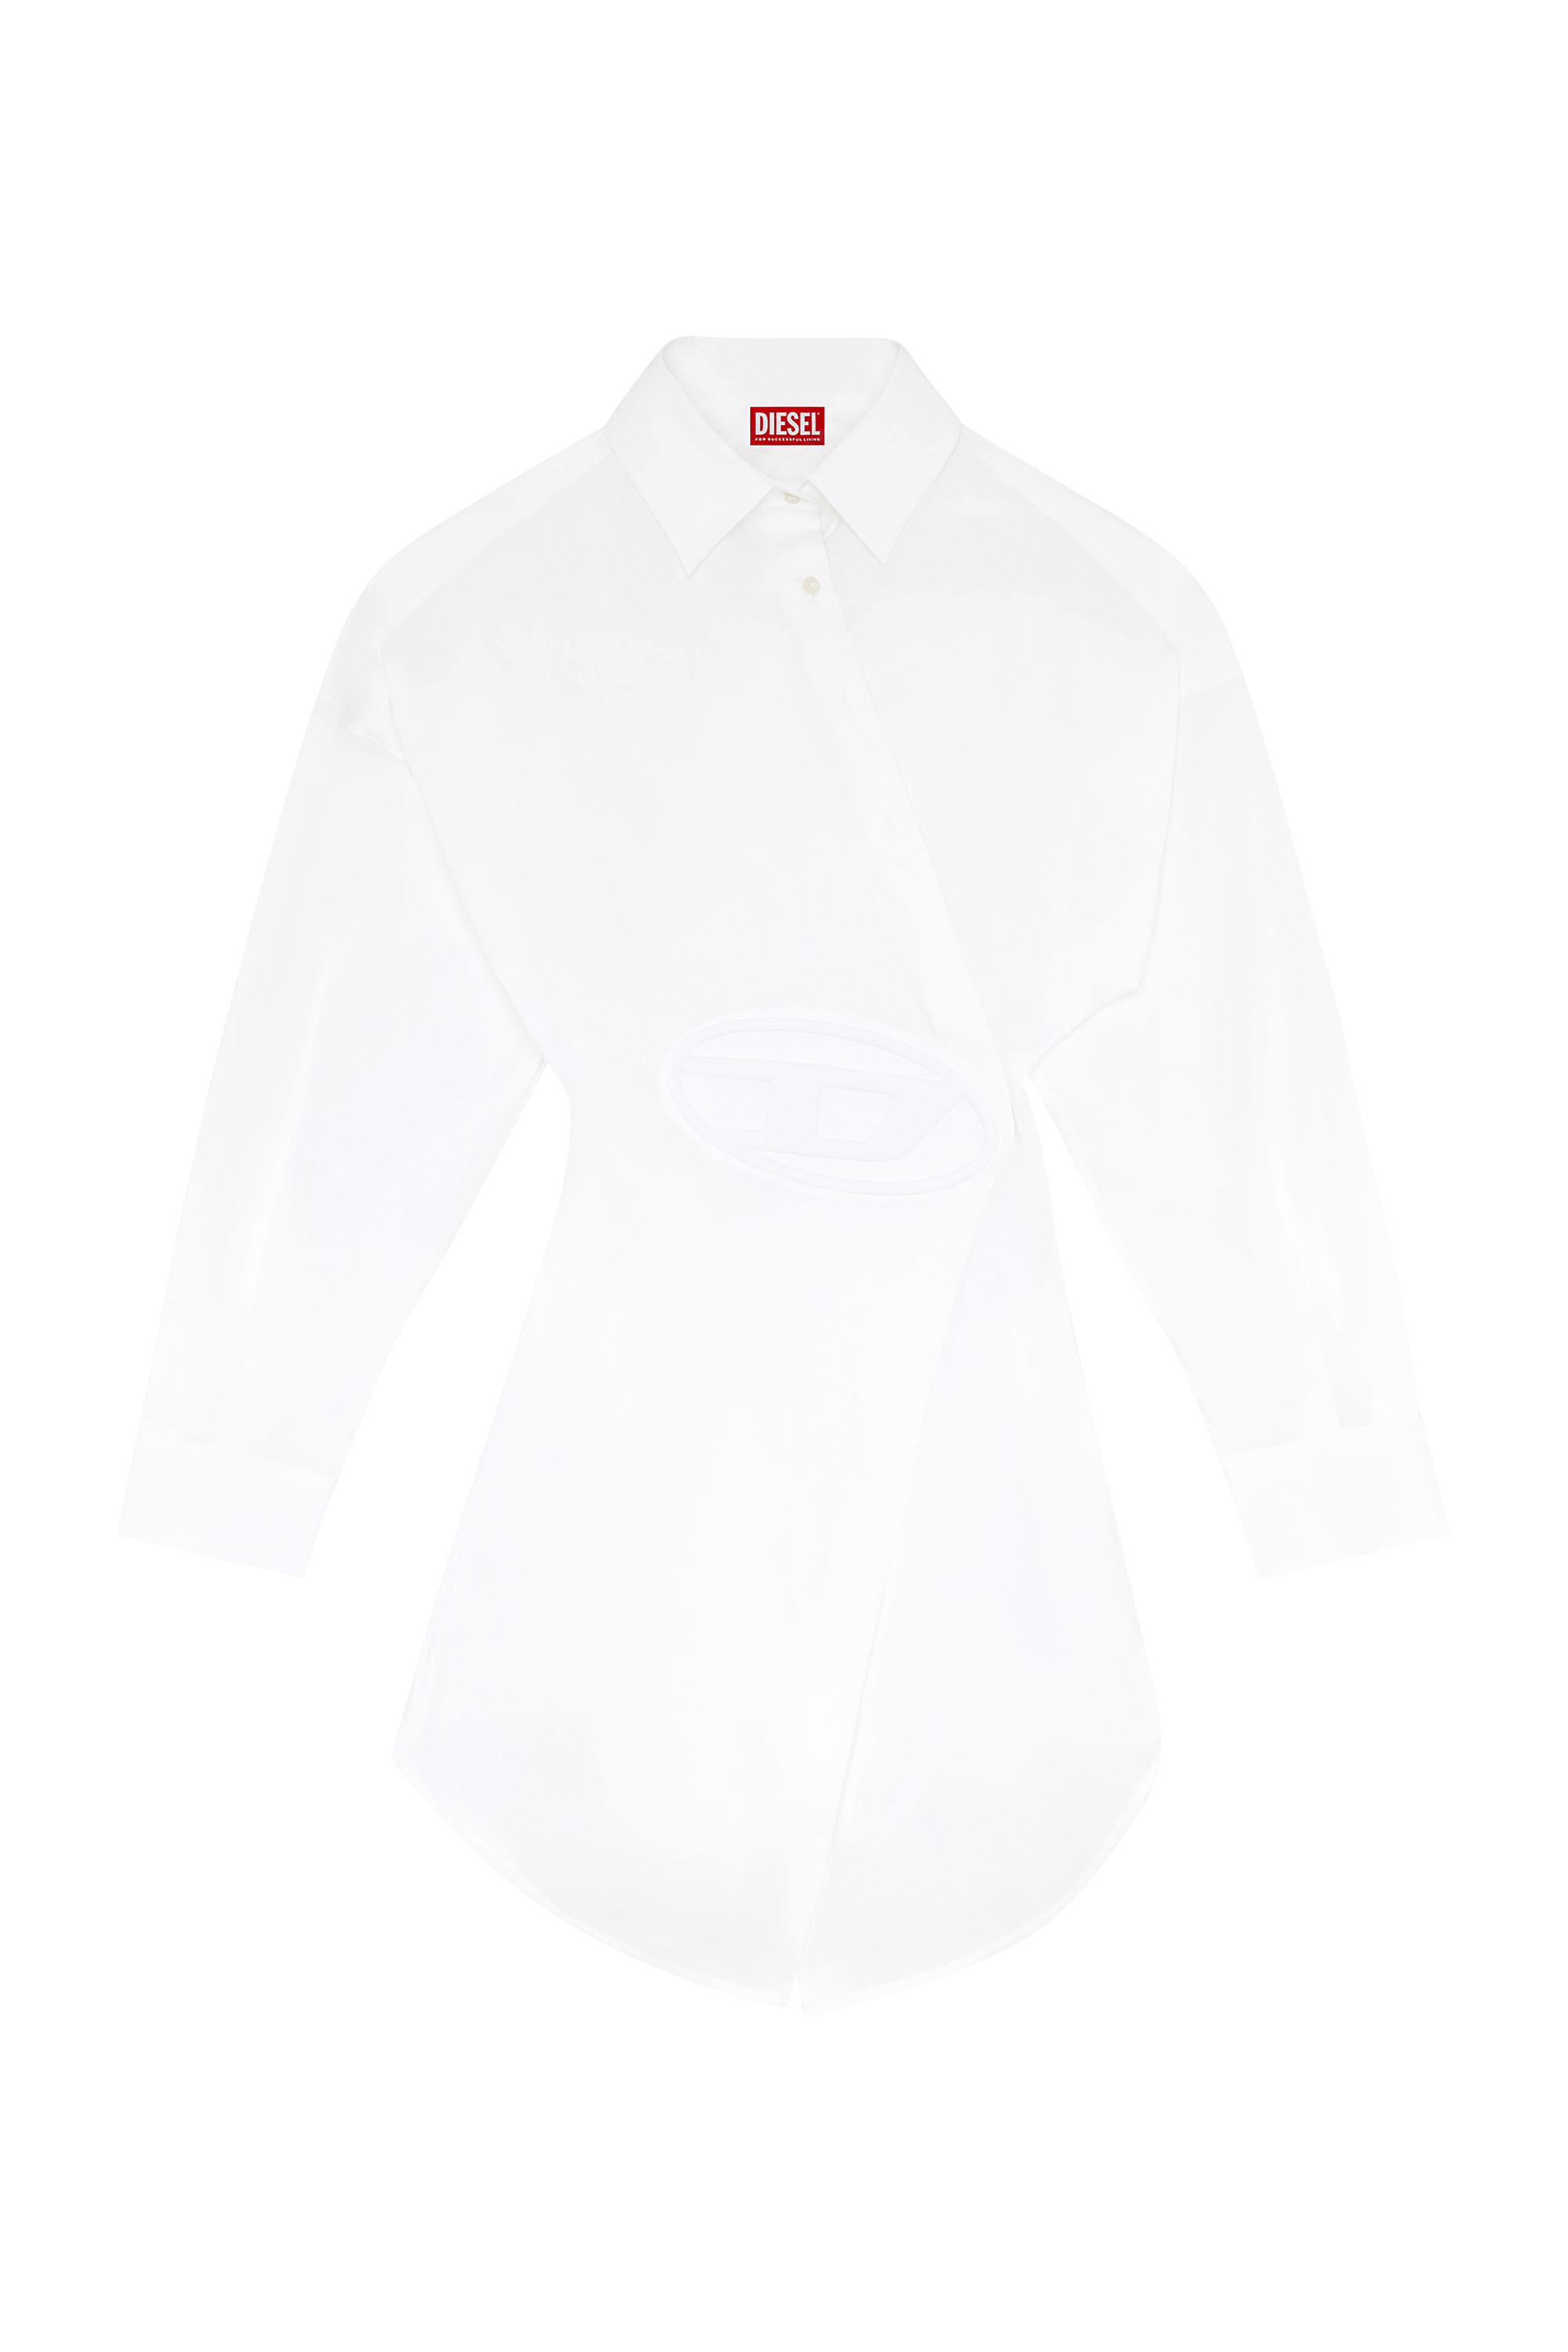 Diesel - D-SIZEN-N1, Woman Short shirt dress in stretch poplin in White - Image 1